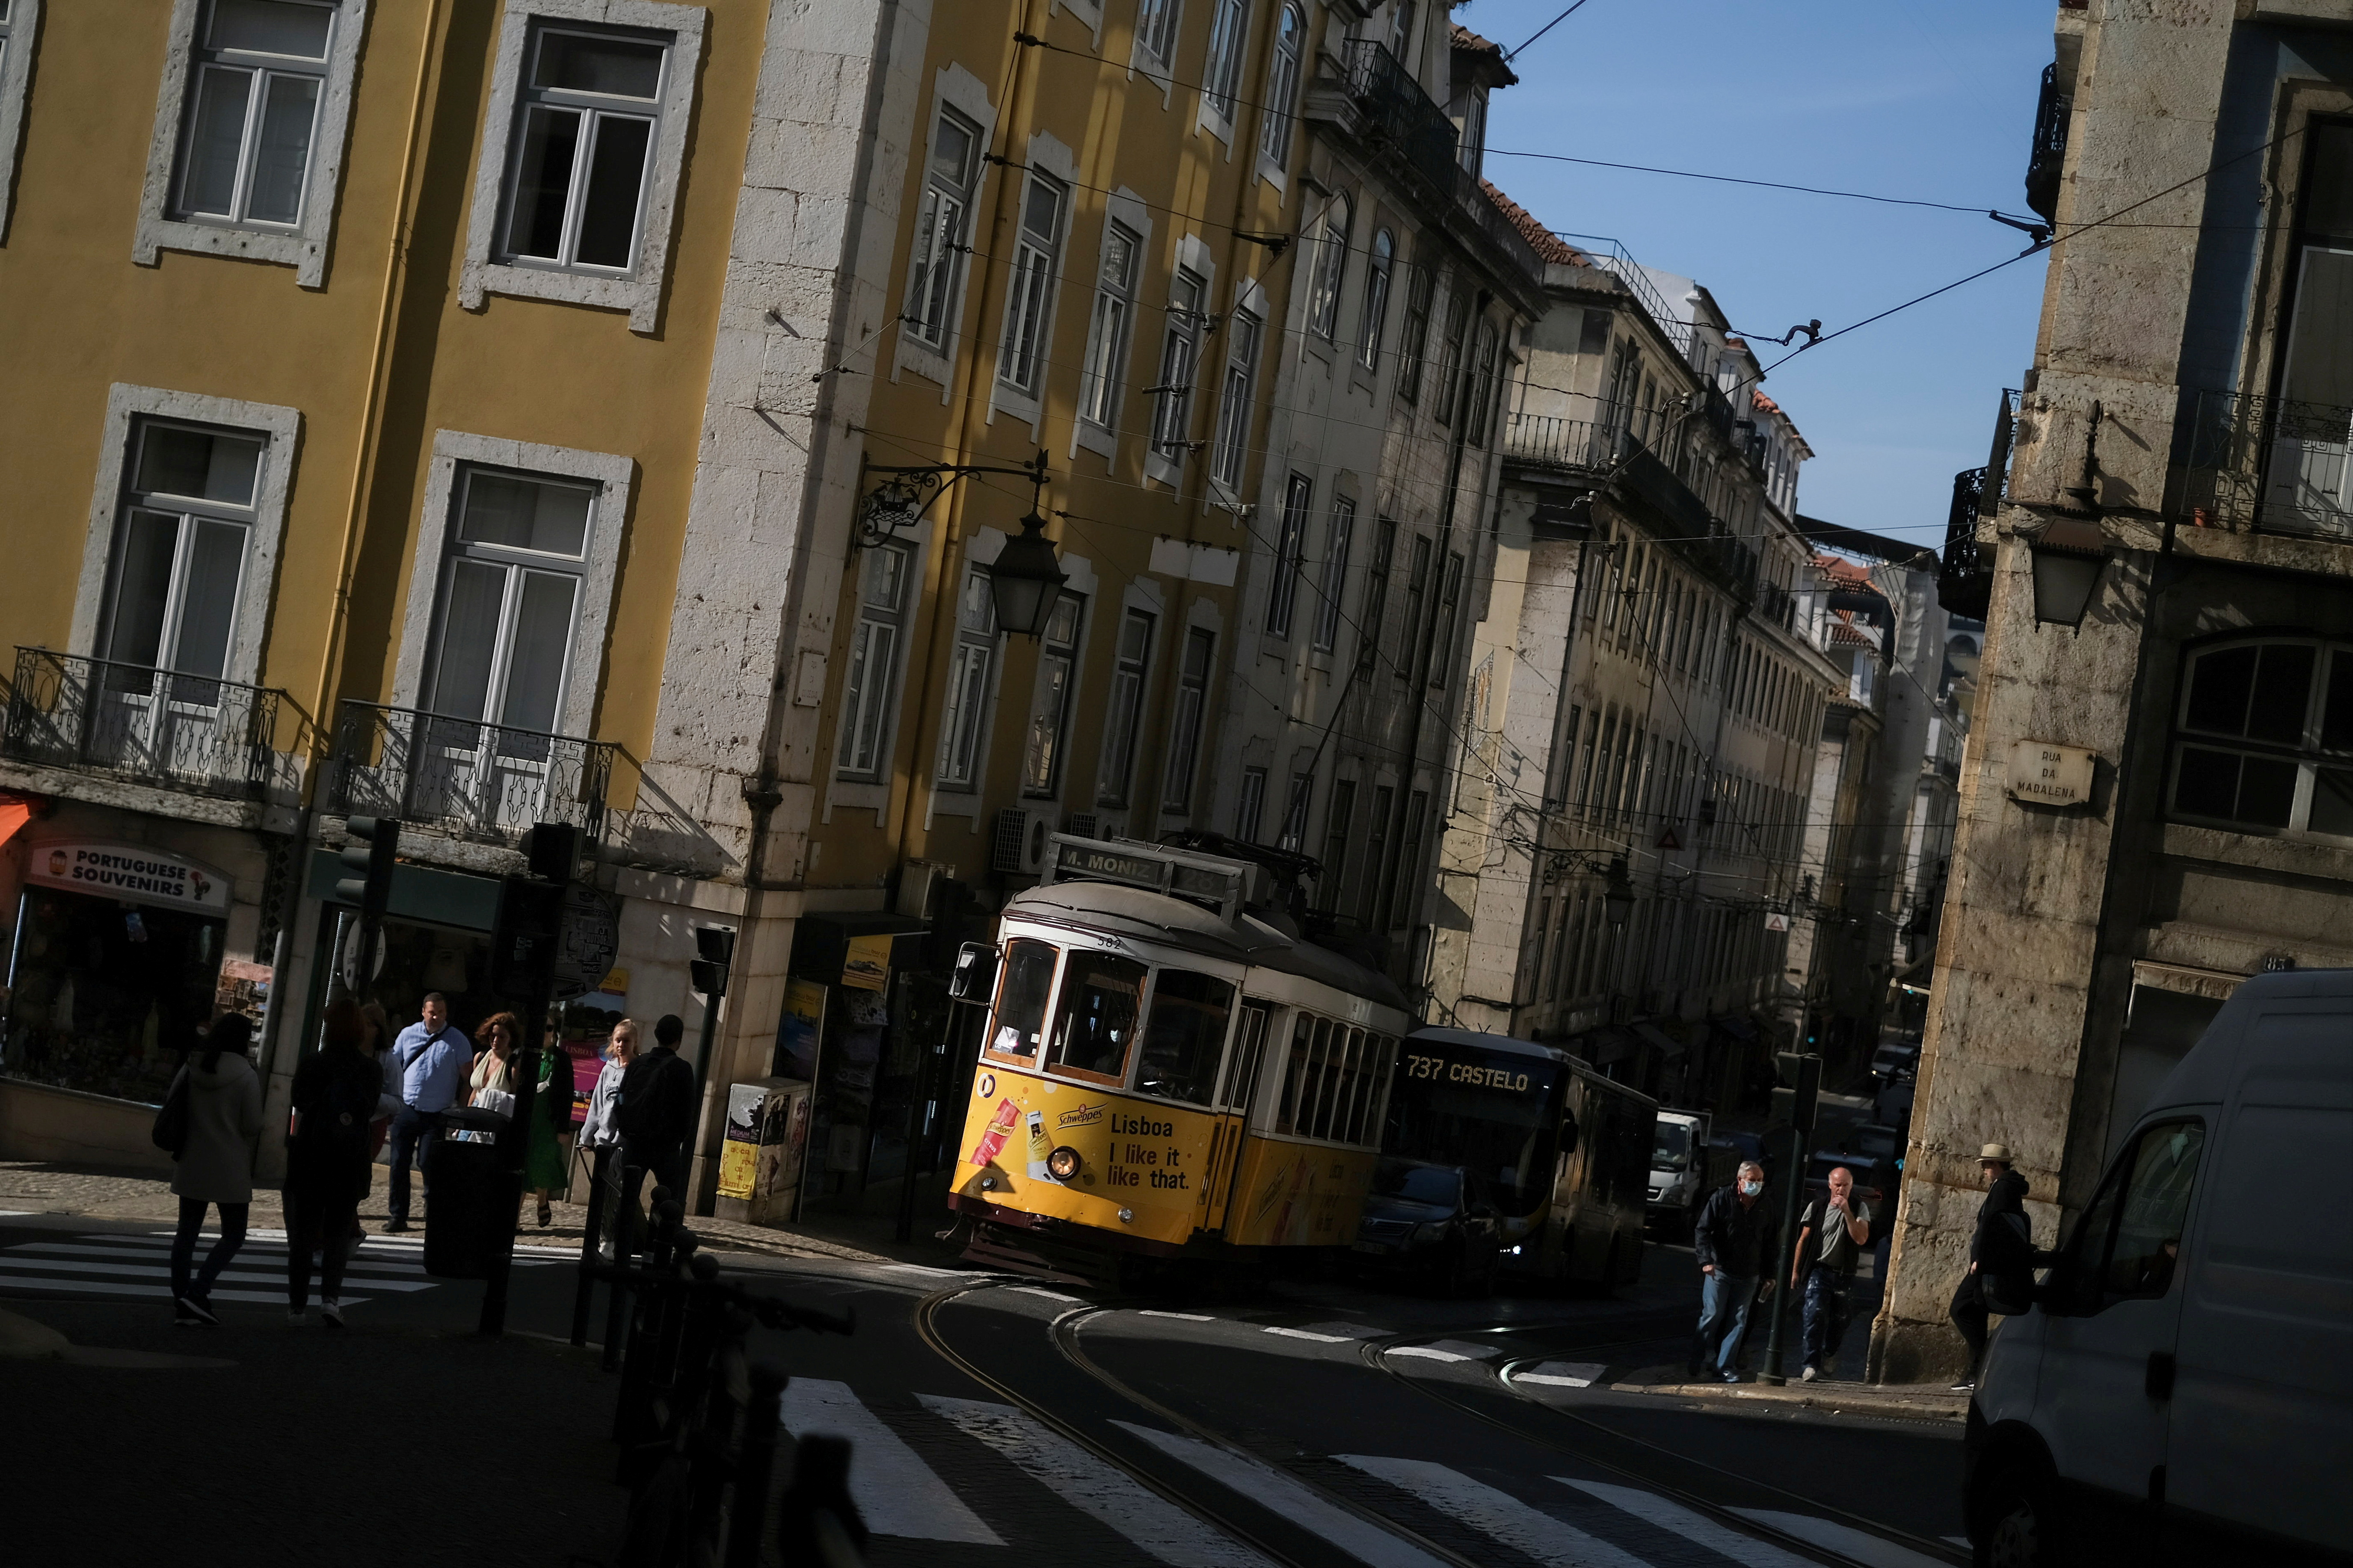 A tram is seen in downtown Lisbon